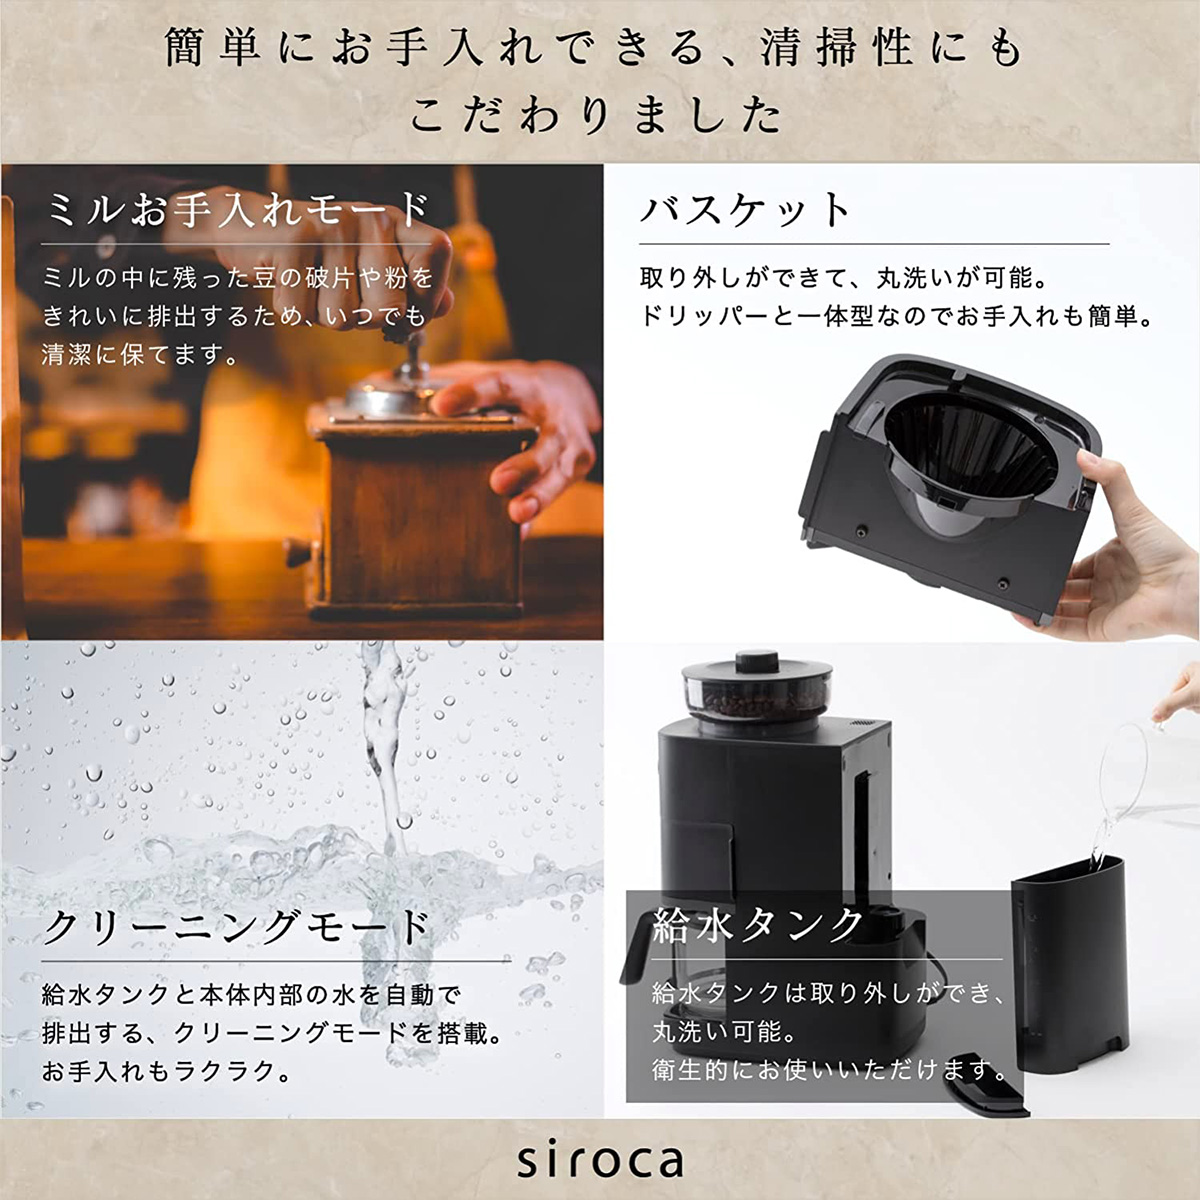 siroca コーン式全自動コーヒーメーカー カフェばこPRO 全自動 /ミル付き ブラック